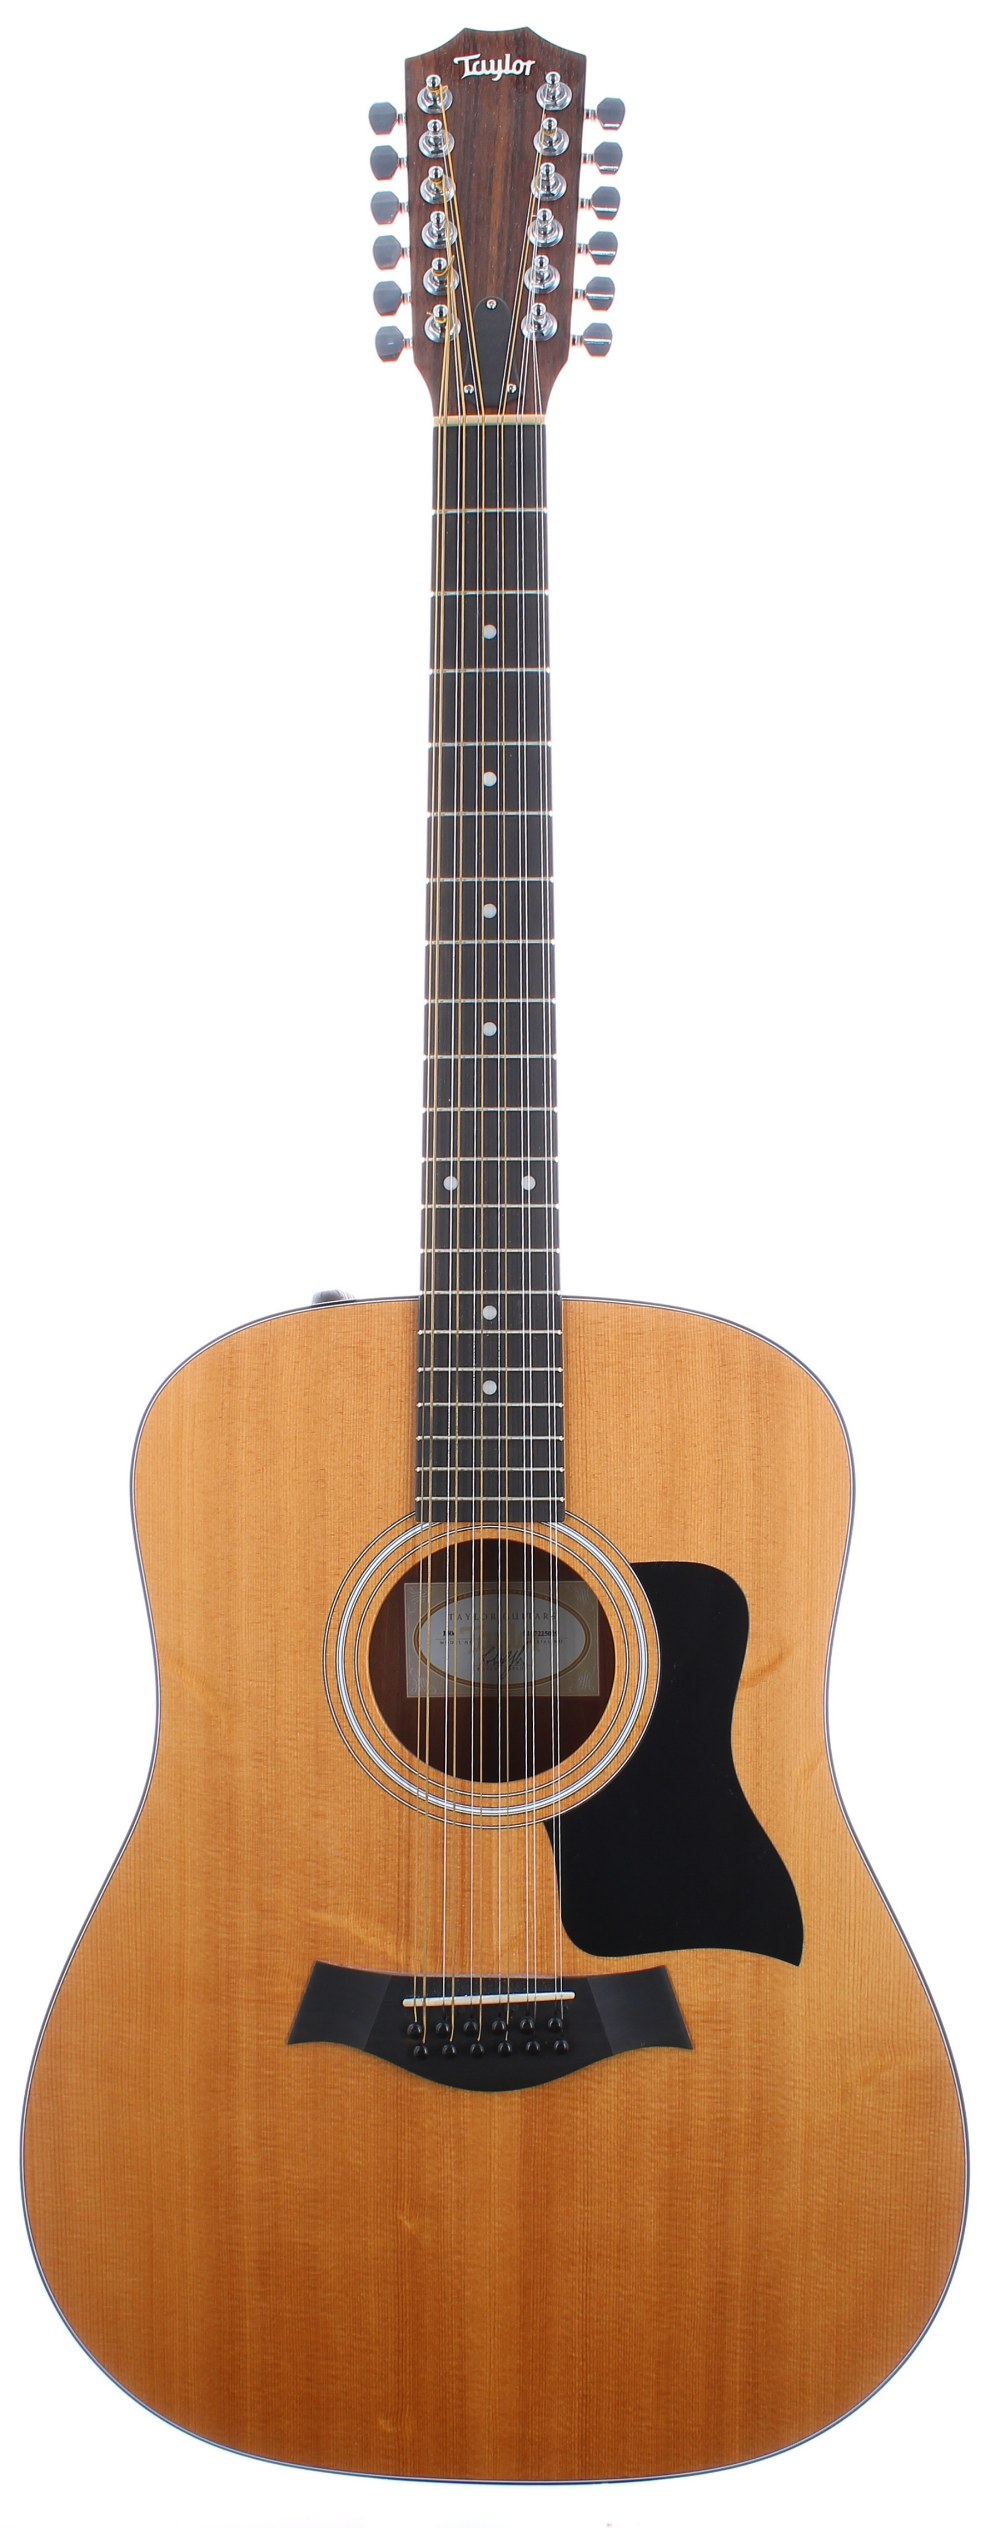 2015 Taylor 150E twelve string electro-acoustic guitar, made in Mexico, ser. no. 2xxxxxxxx9; Back